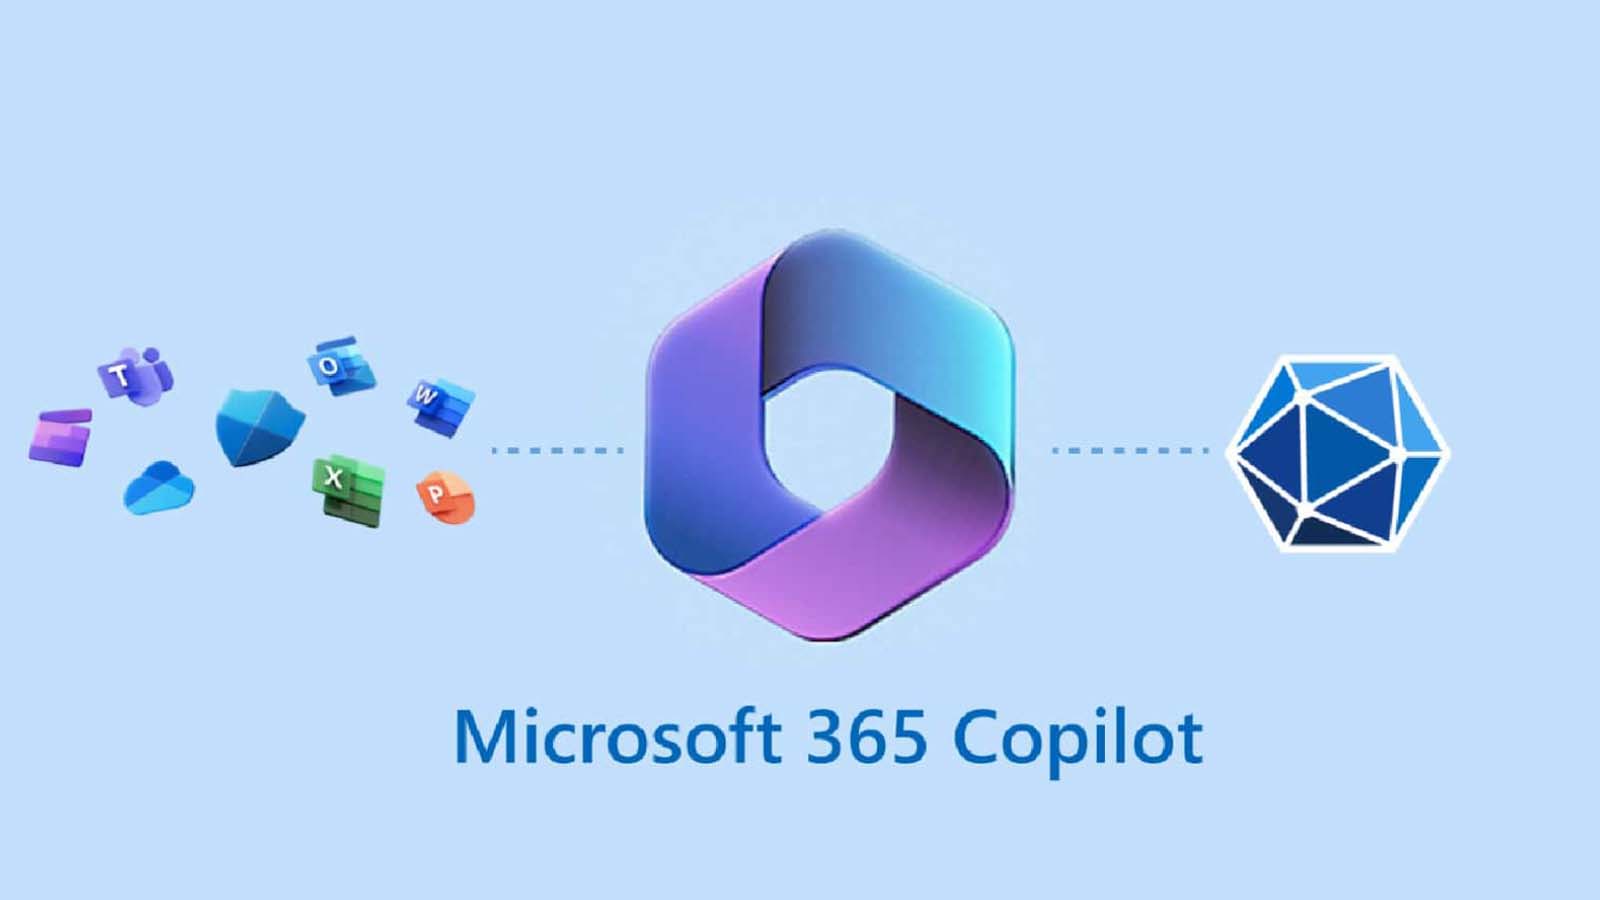 Windows Copilot si propone di semplificare la vita degli utenti, affrontando e risolvendo automaticamente le sfide quotidiane